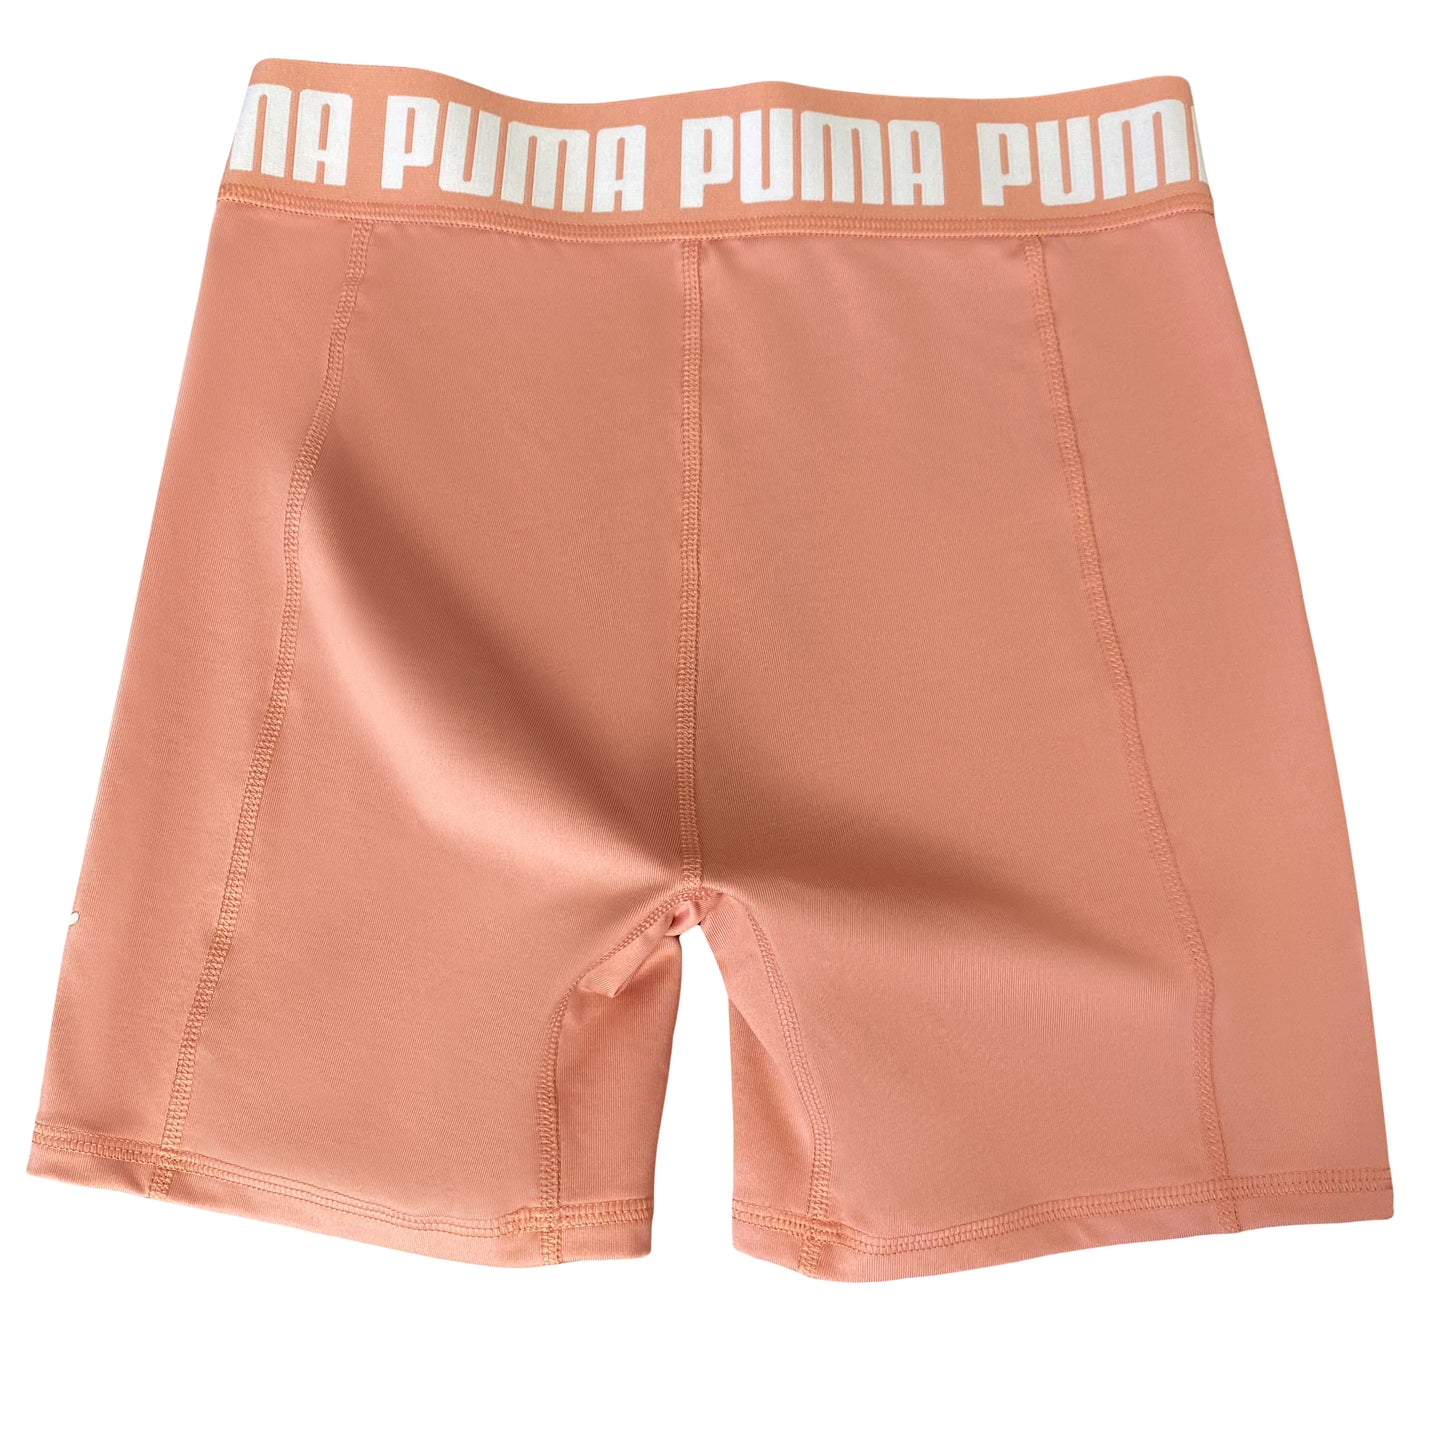 PUMA bike shorts | size small